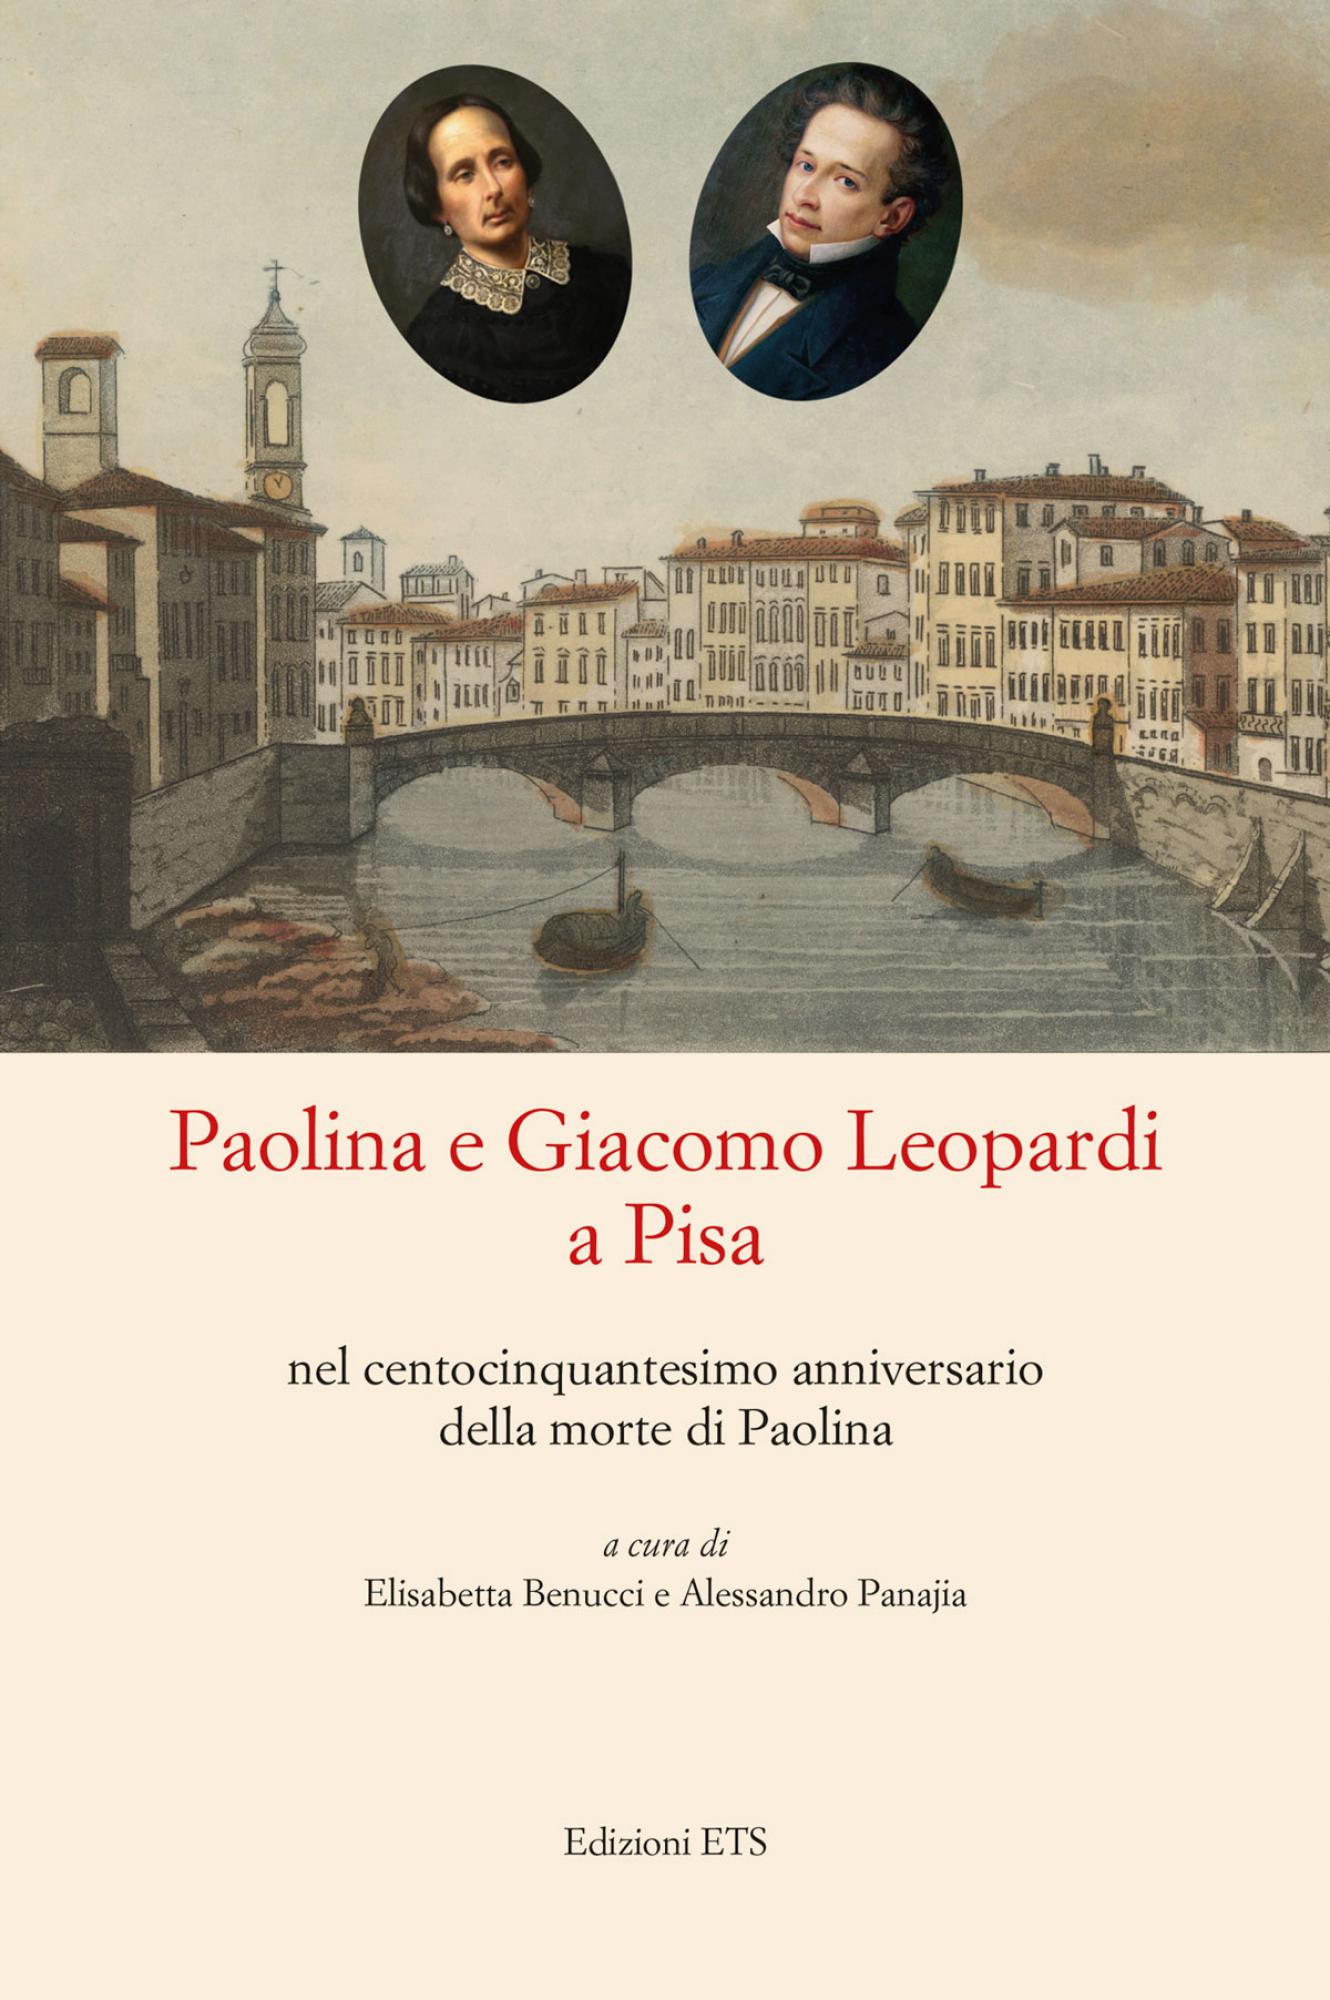 Paolina e Giacomo Leopardi a Pisa<br /><br />.nel centocinquantesimo anniversario della morte di Paolina